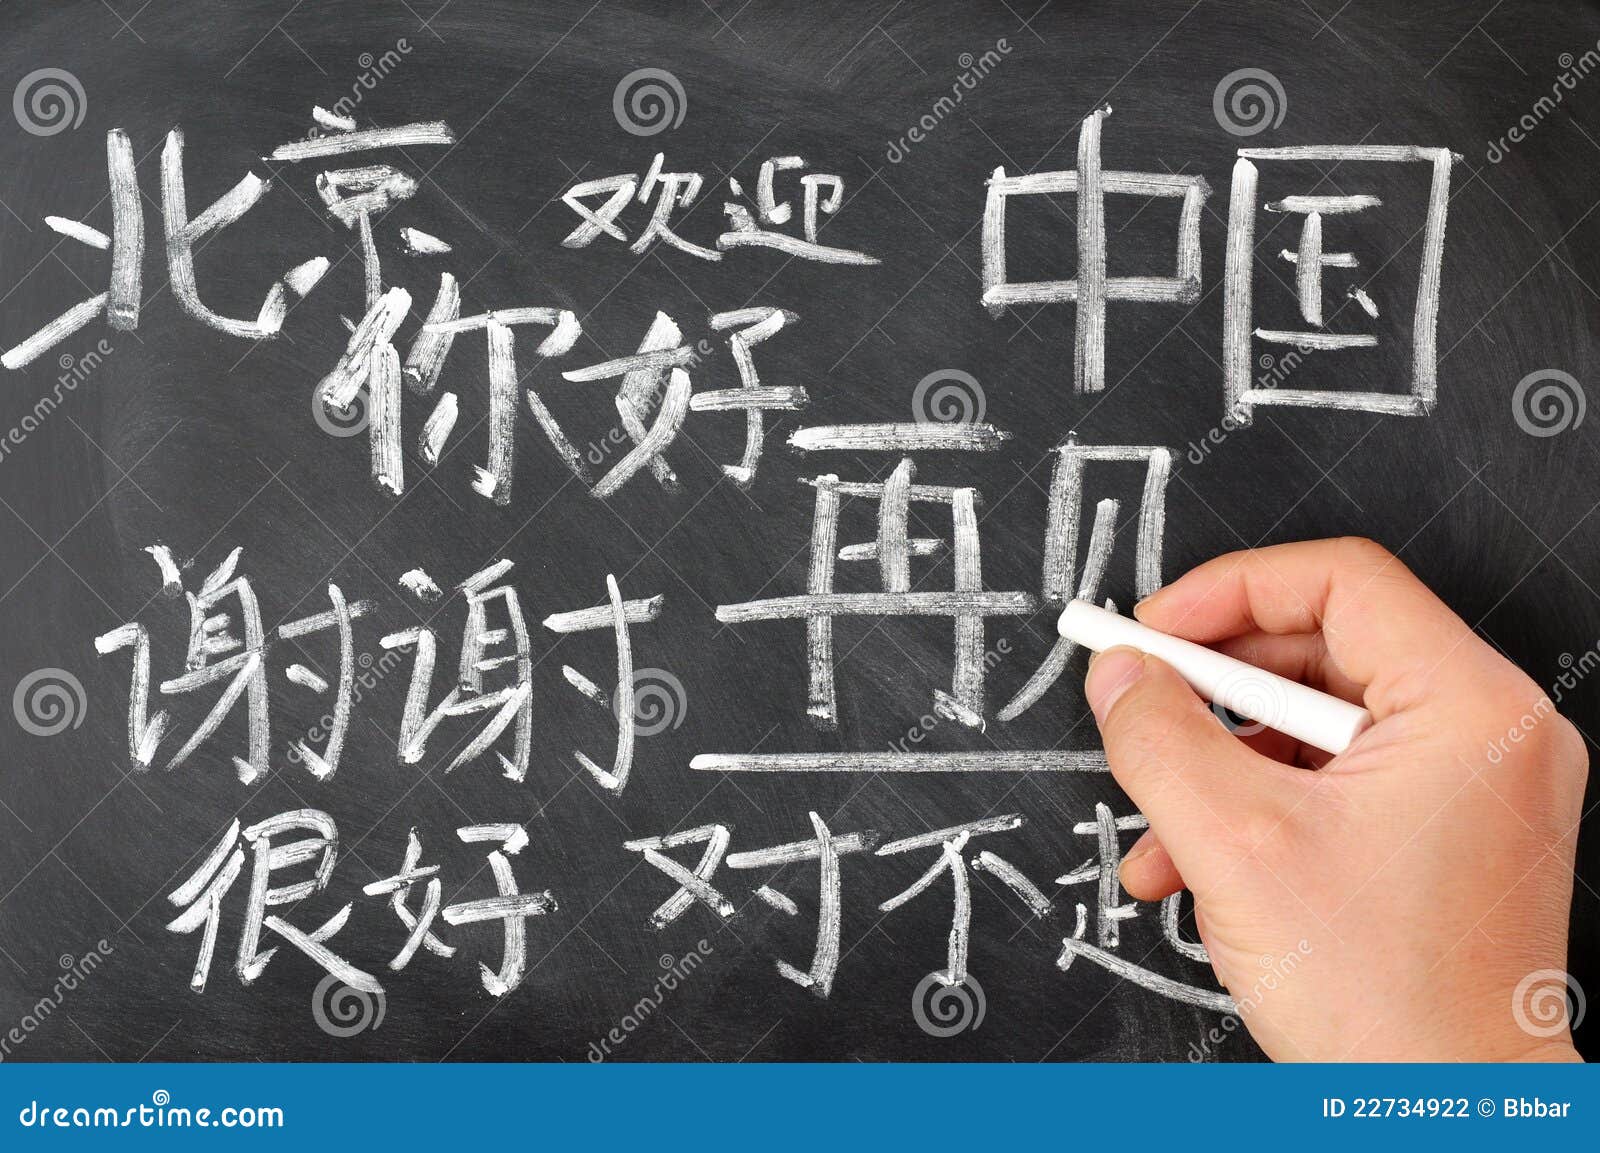 chinese language studying